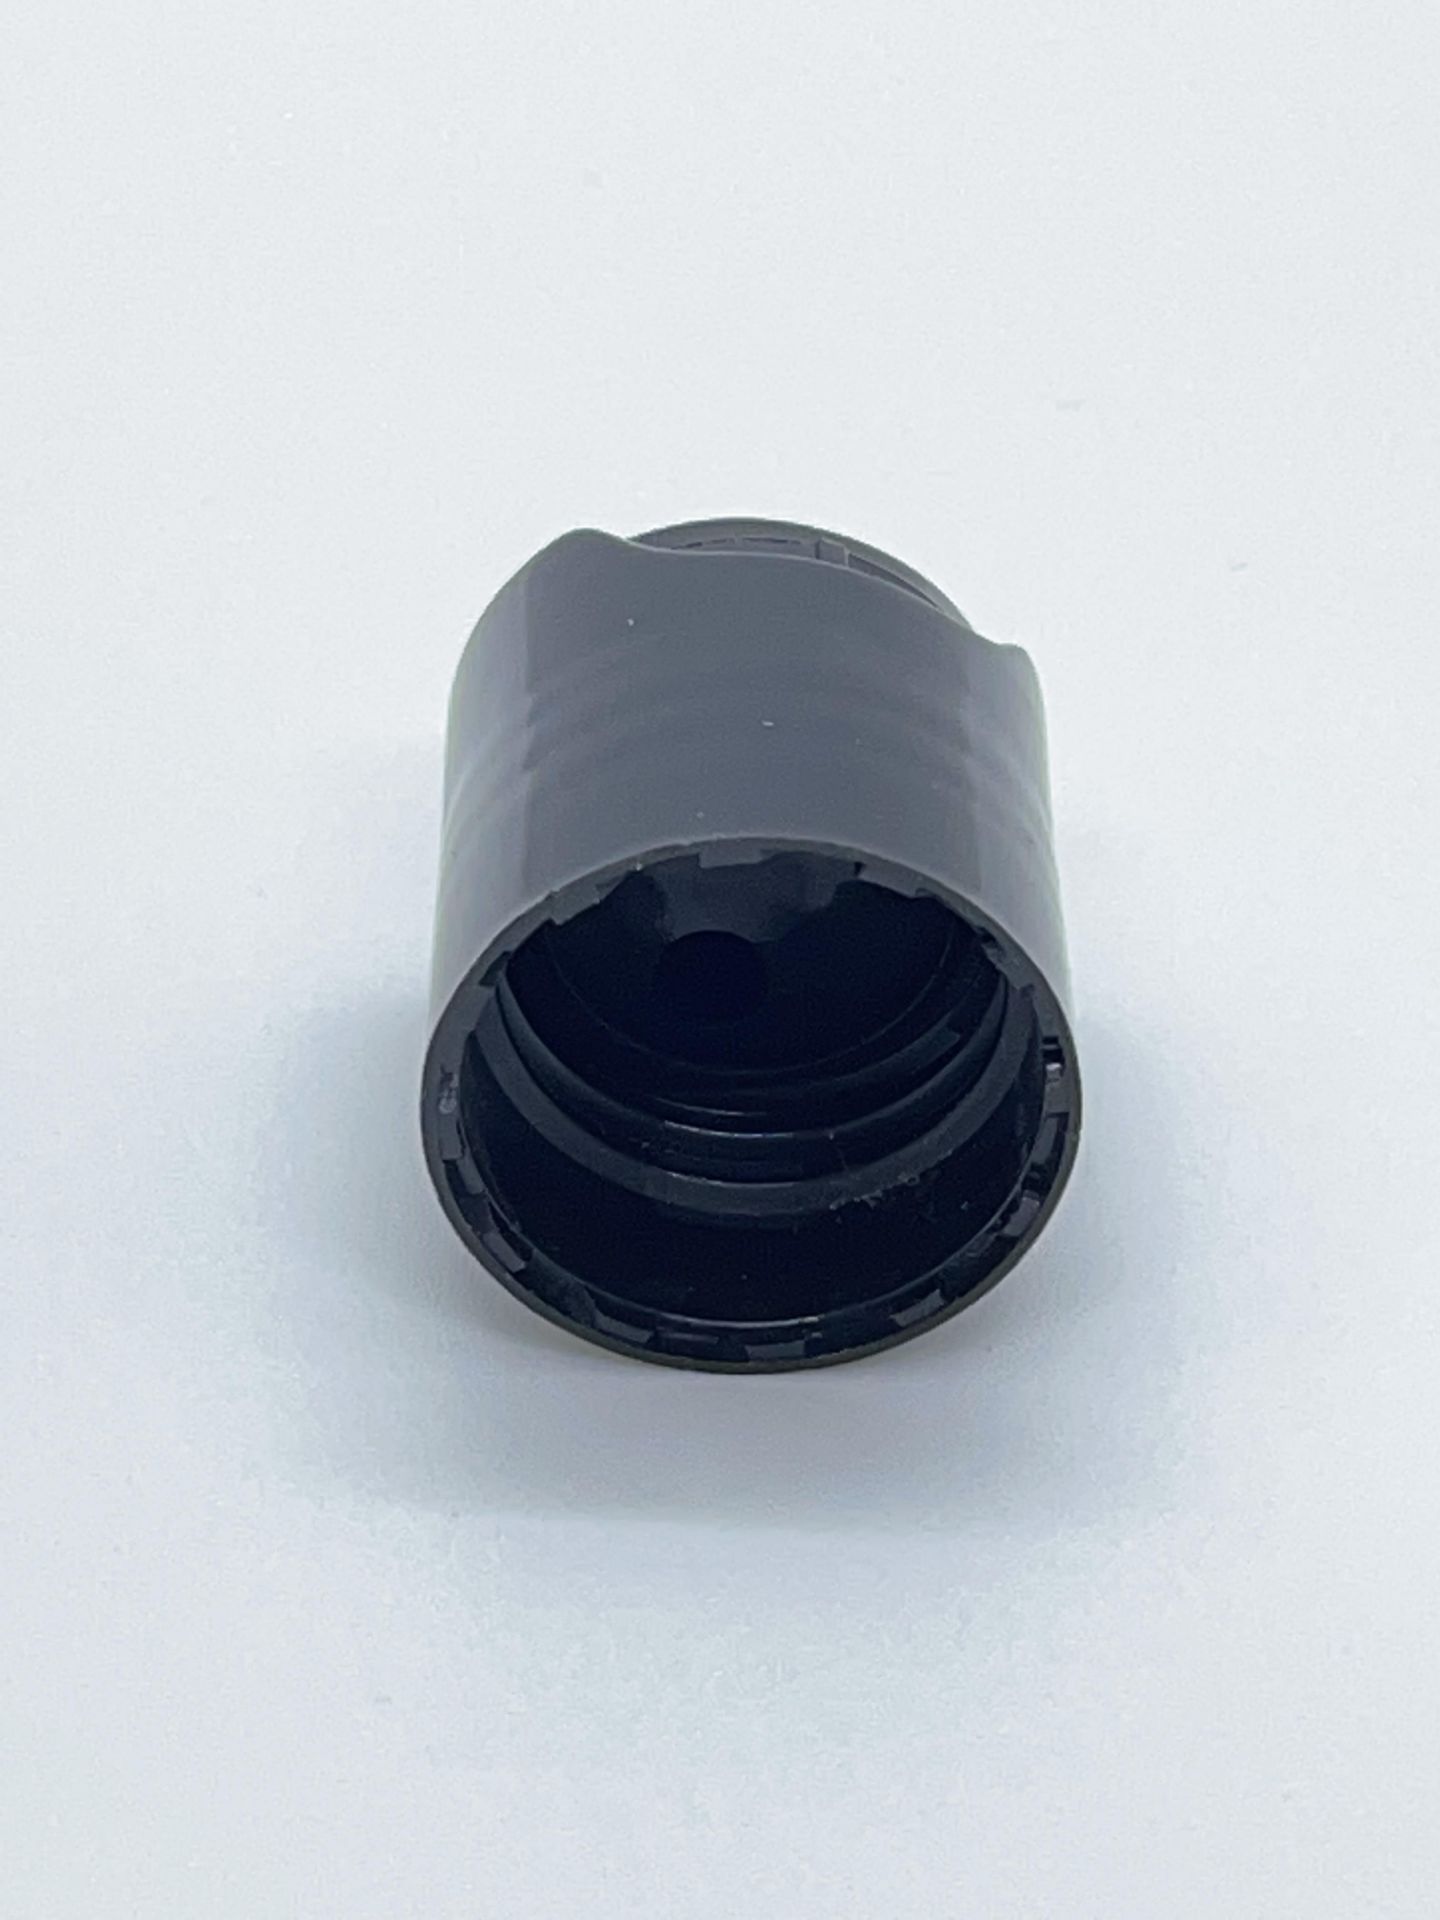 84,000 - Black Disc Bottle Caps for 2 oz plastic bottles and 4 oz glass bottles, 20-410 Threading - Image 2 of 4